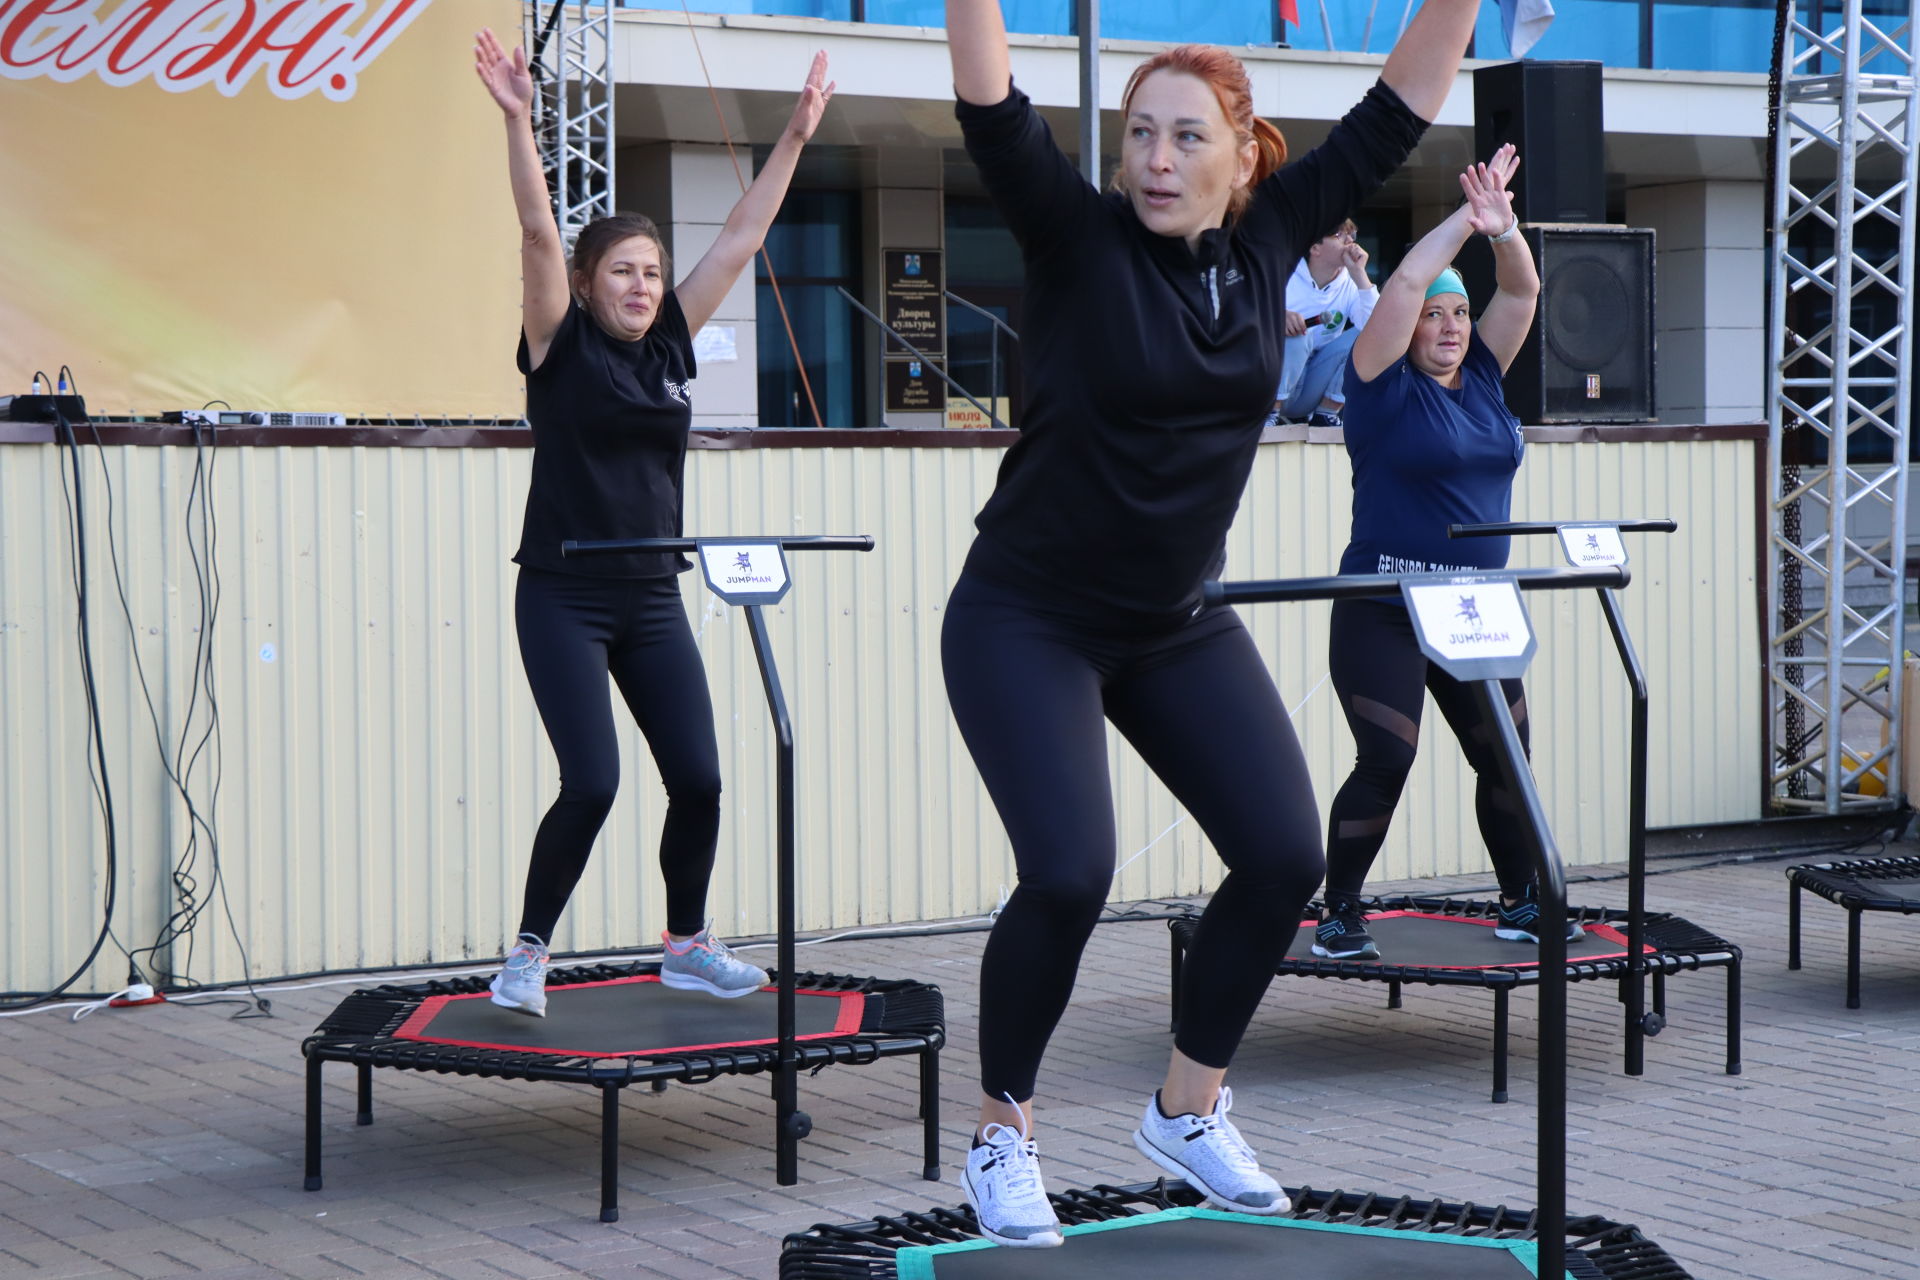 «Здоровый Менделеевск» открыл возможность провести лето весело и спортивно